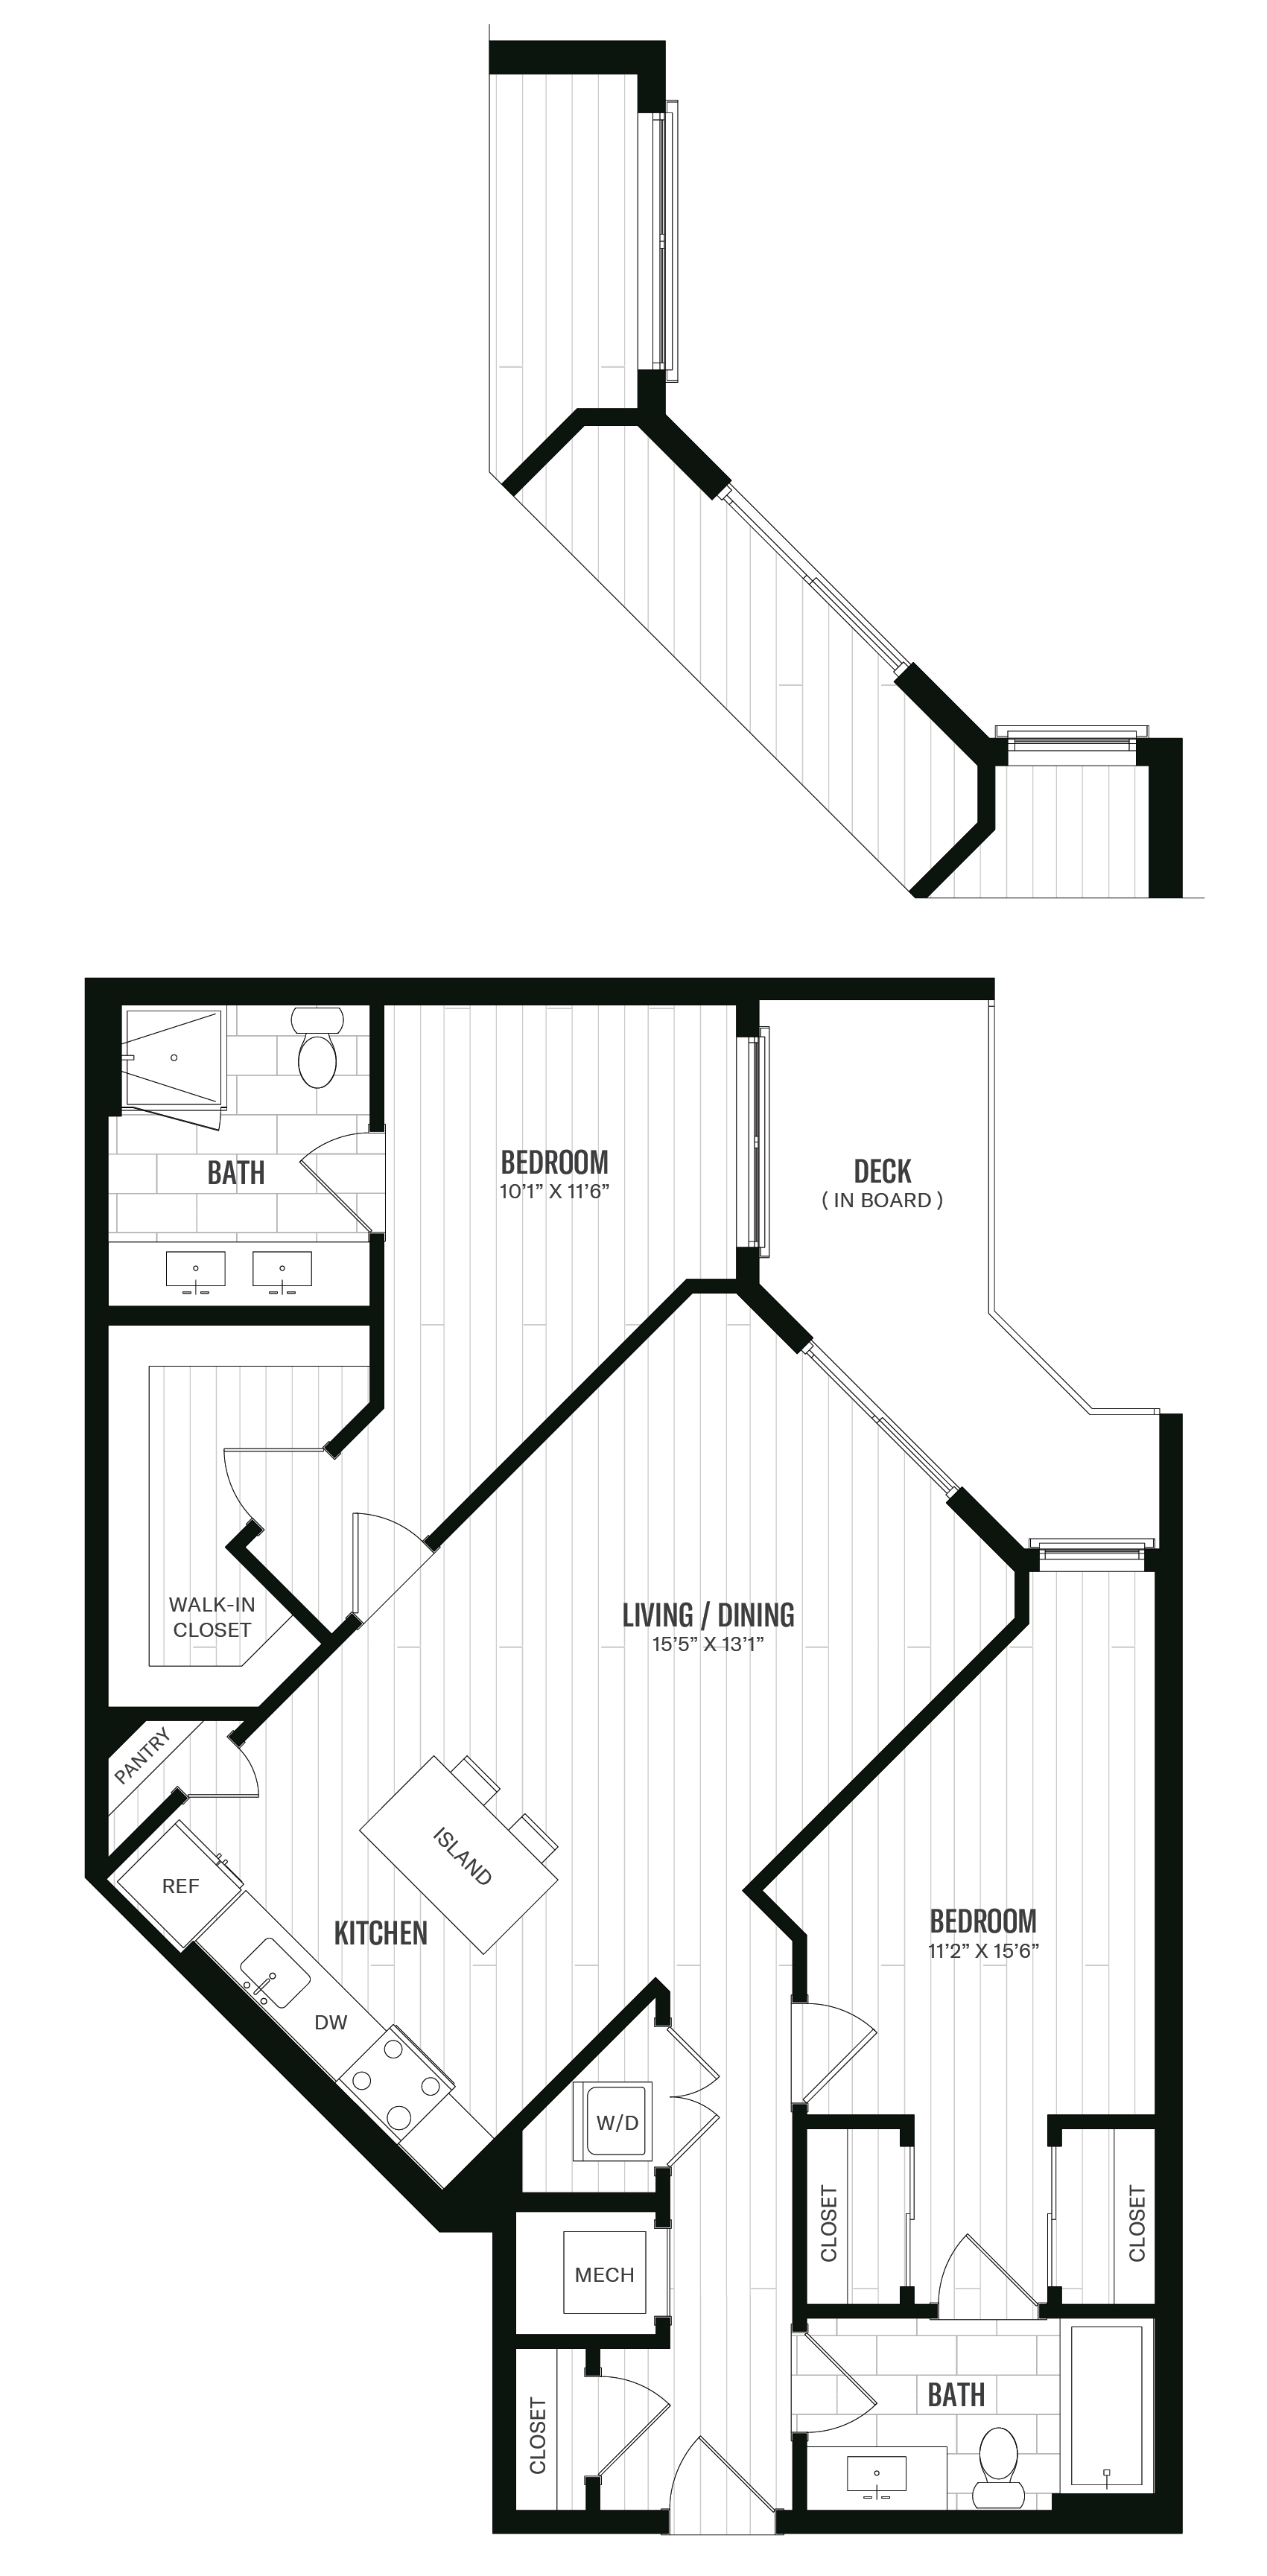 Floorplan image of unit 251